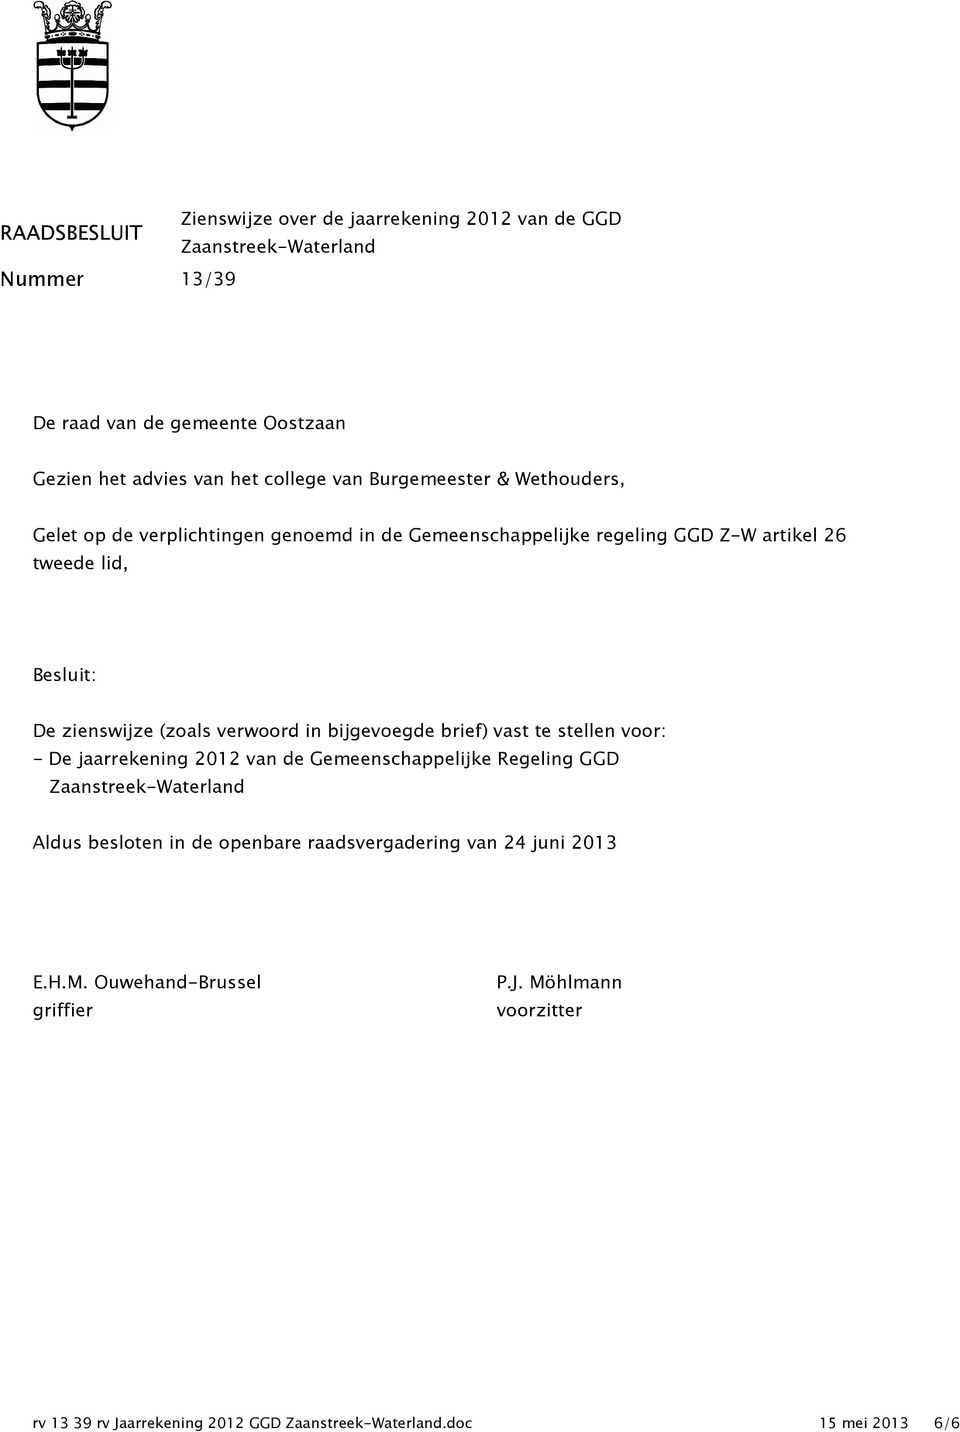 verwoord in bijgevoegde brief) vast te stellen voor: - De jaarrekening 2012 van de Gemeenschappelijke Regeling GGD Zaanstreek-Waterland Aldus besloten in de